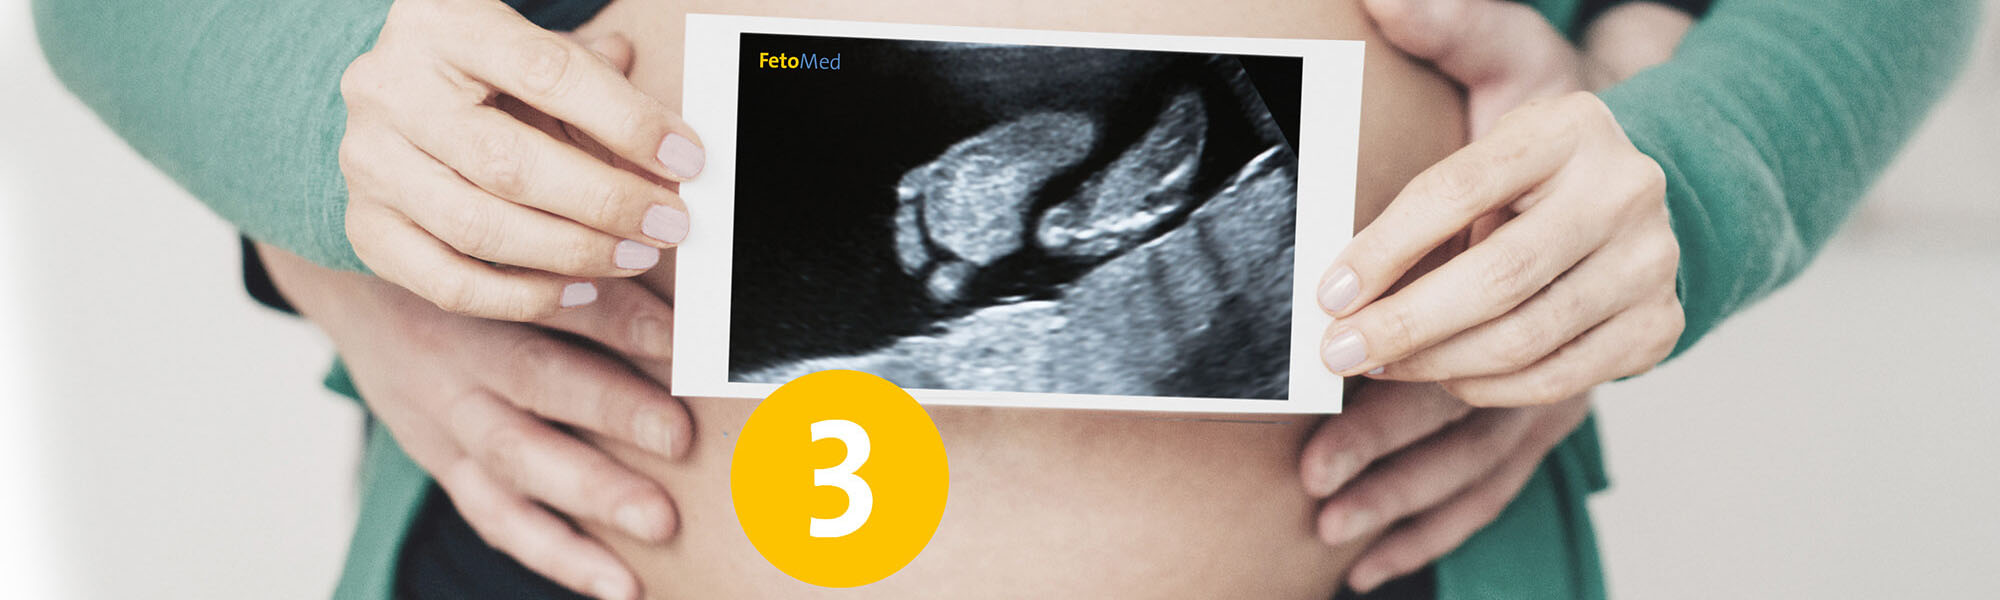 Ultraschall-Bild eines ungeborenen Kindes vor einem entblößten schwangeren Bauch.